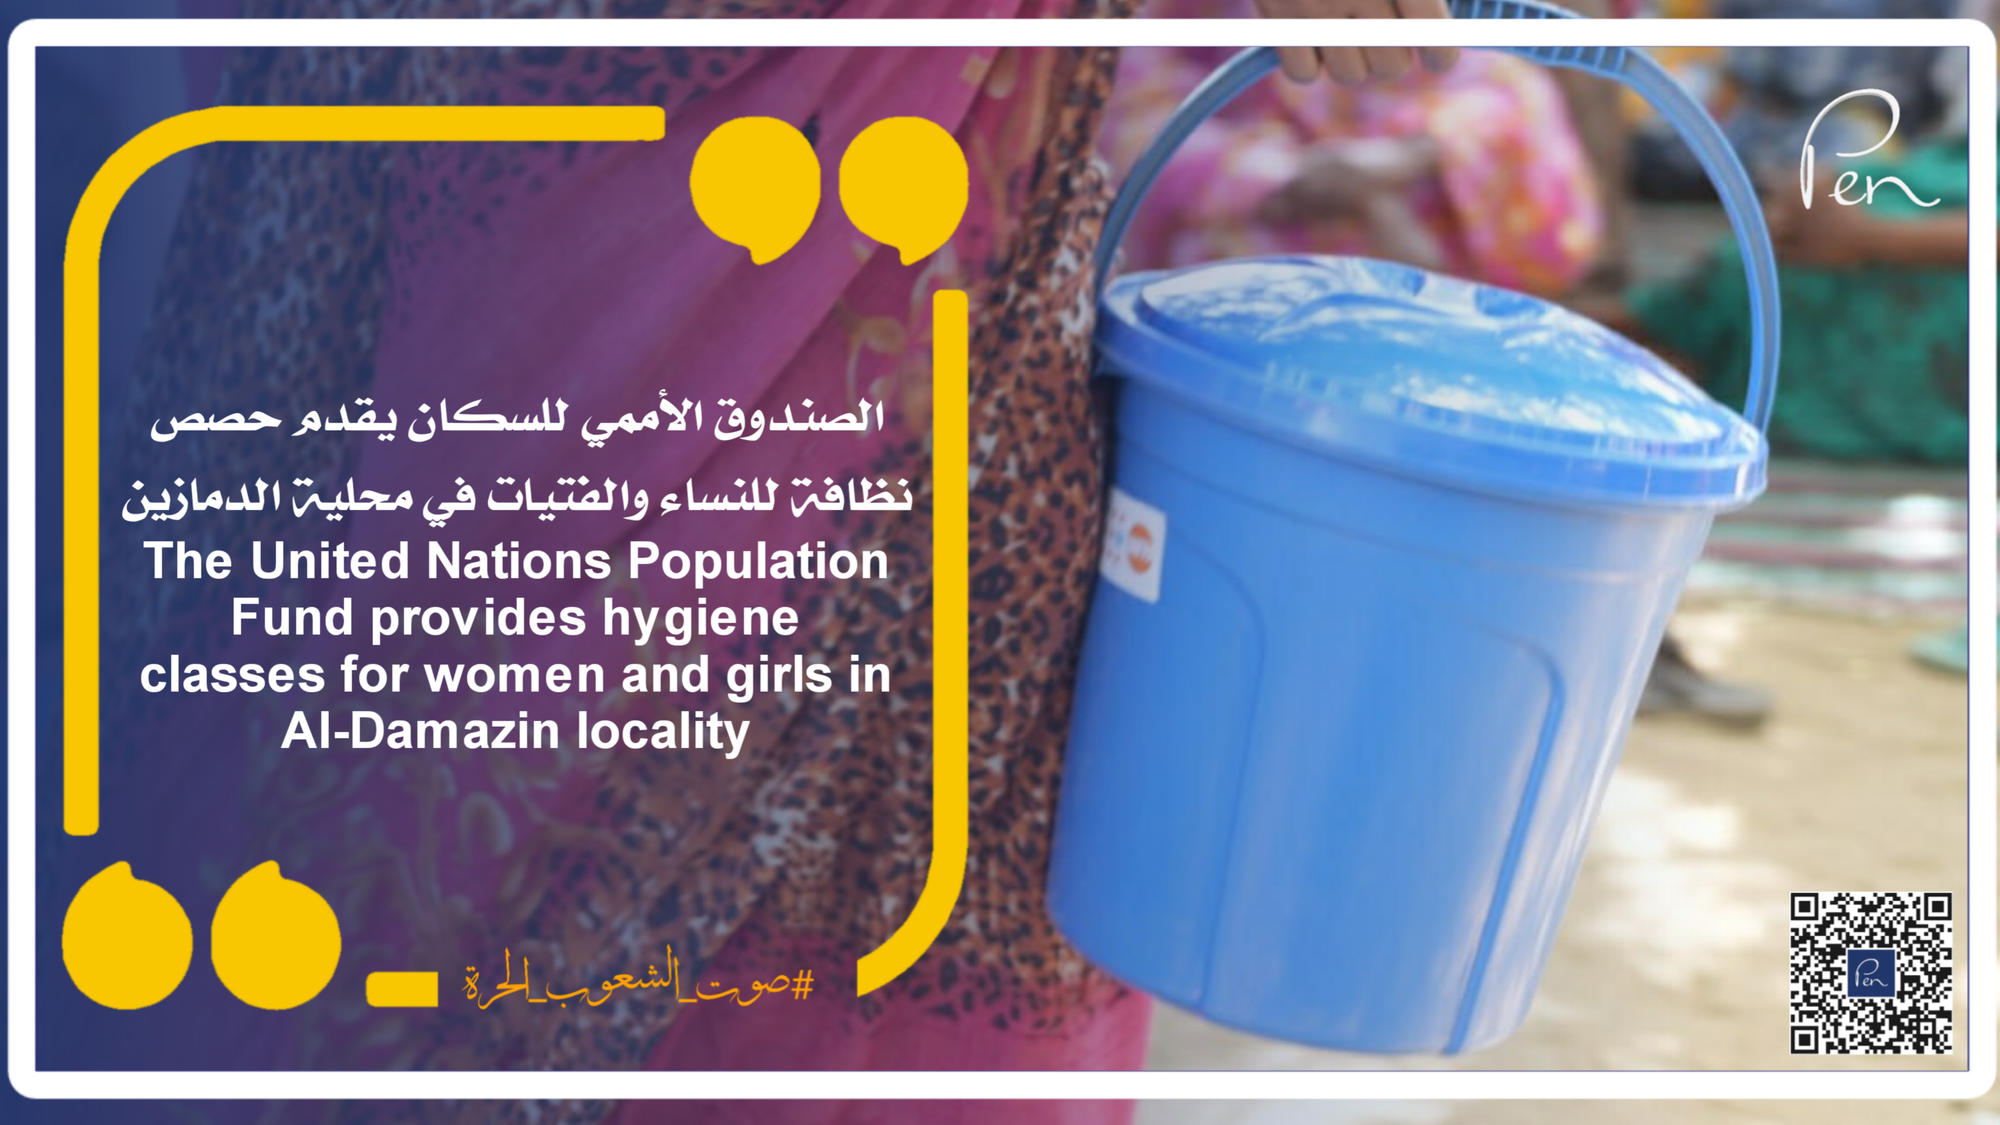 الصندوق الأممي للسكان يقدم حصص نظافة للنساء والفتيات في محلية الدمازين